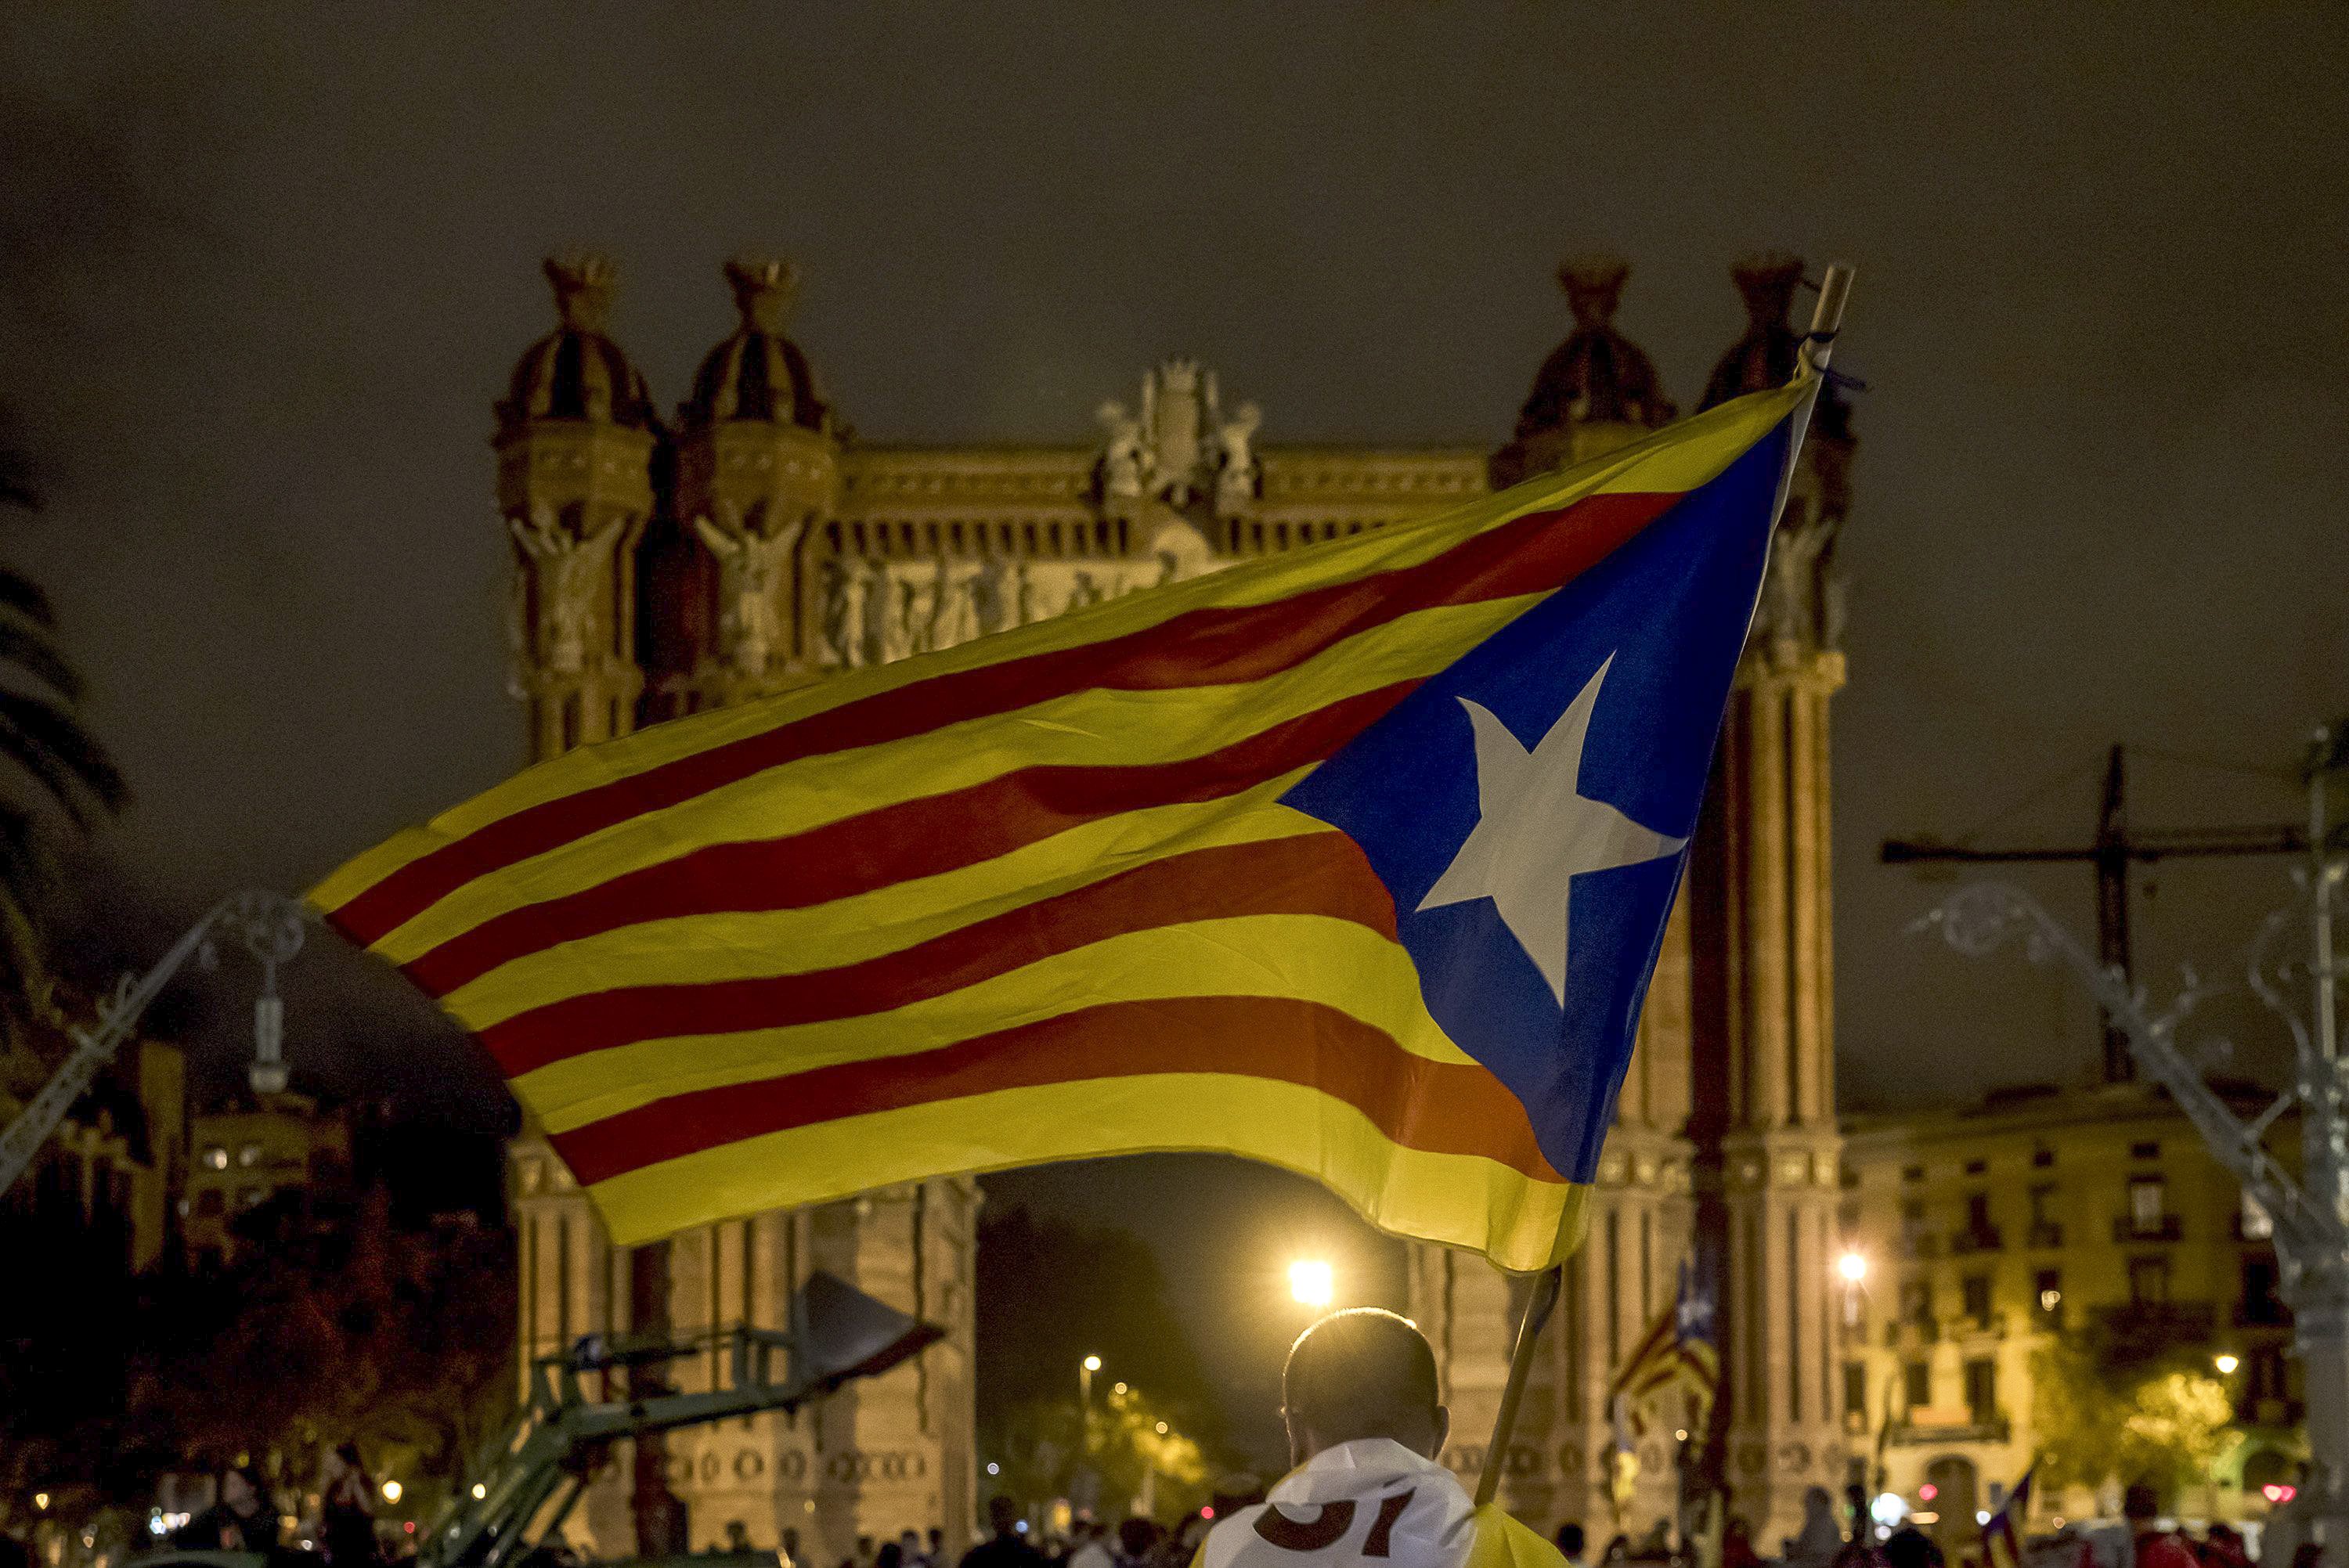 El TSJC dice que la declaración de Puigdemont no despliega ningún "efecto jurídico"